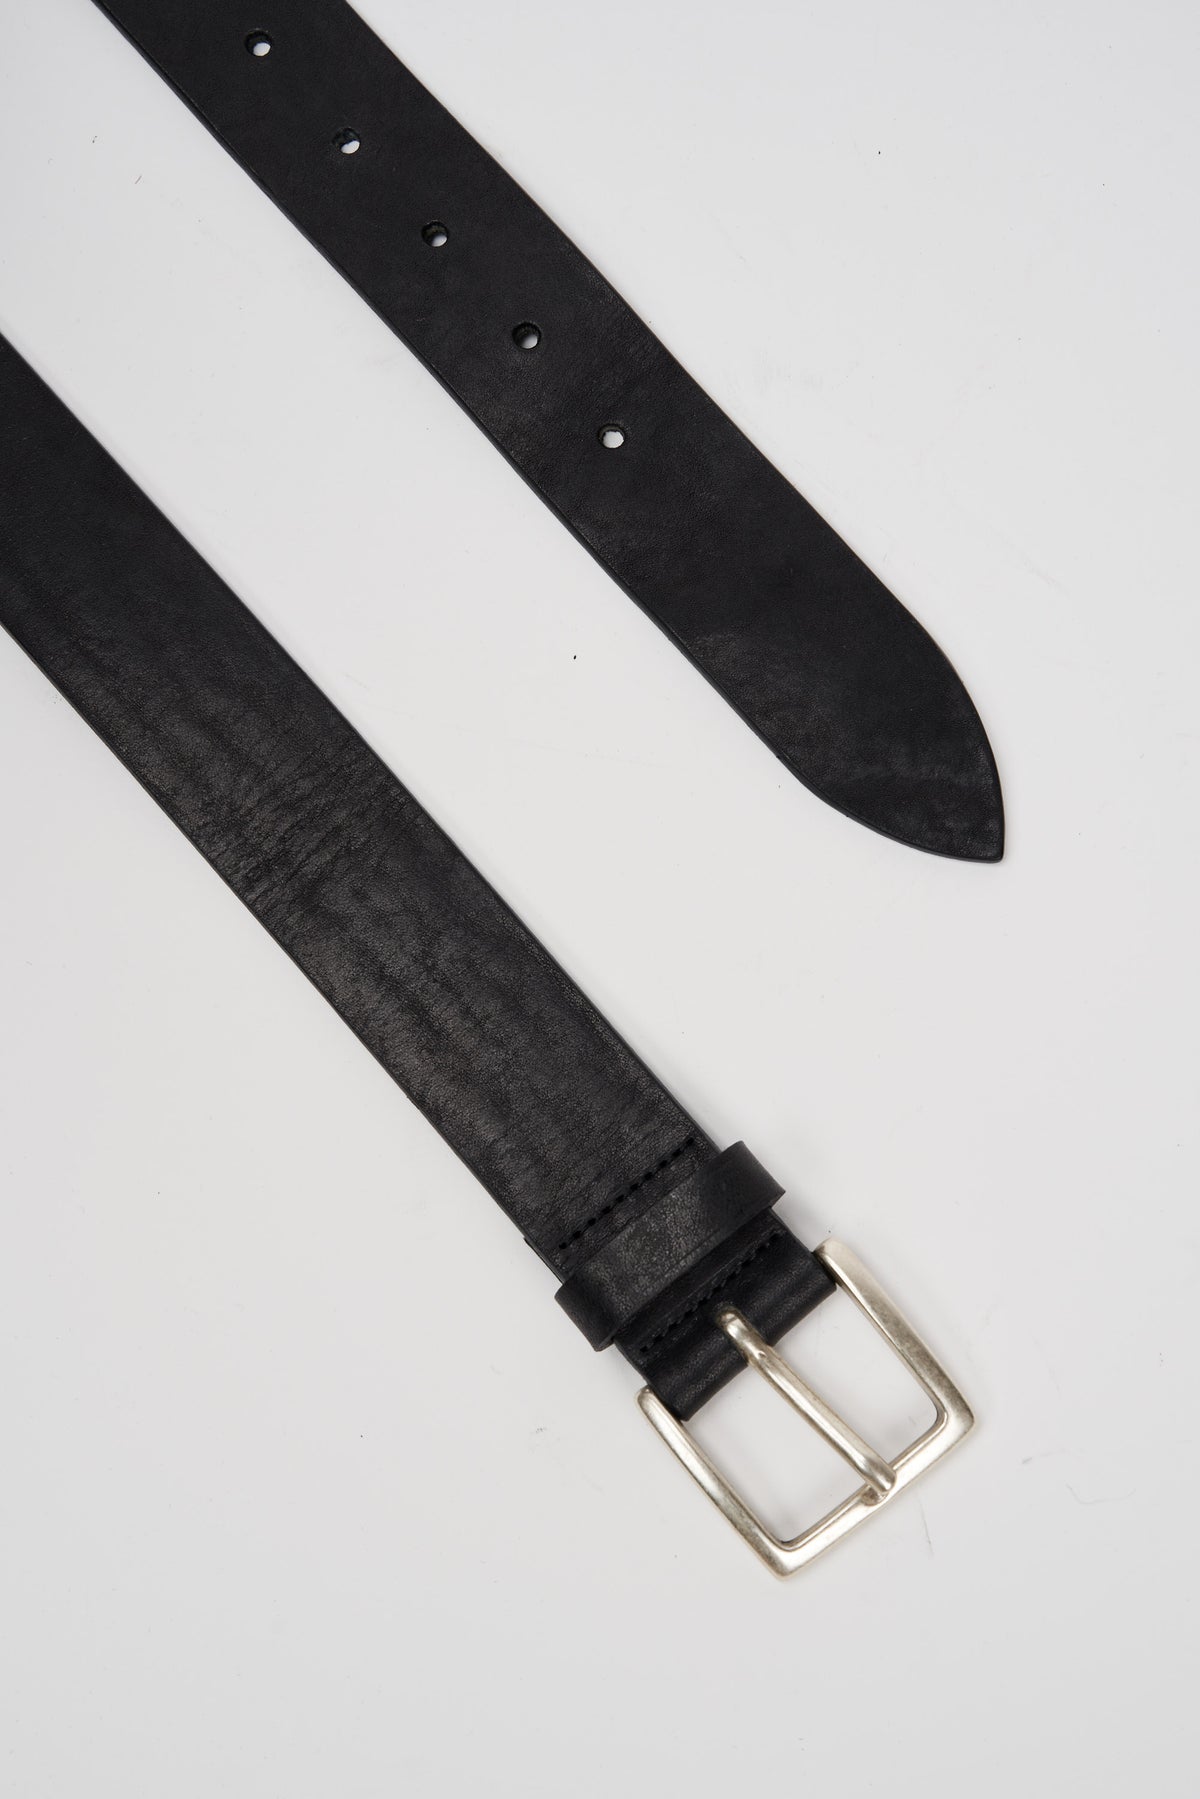 D'Amico Leather Belt Vintage Effect Black